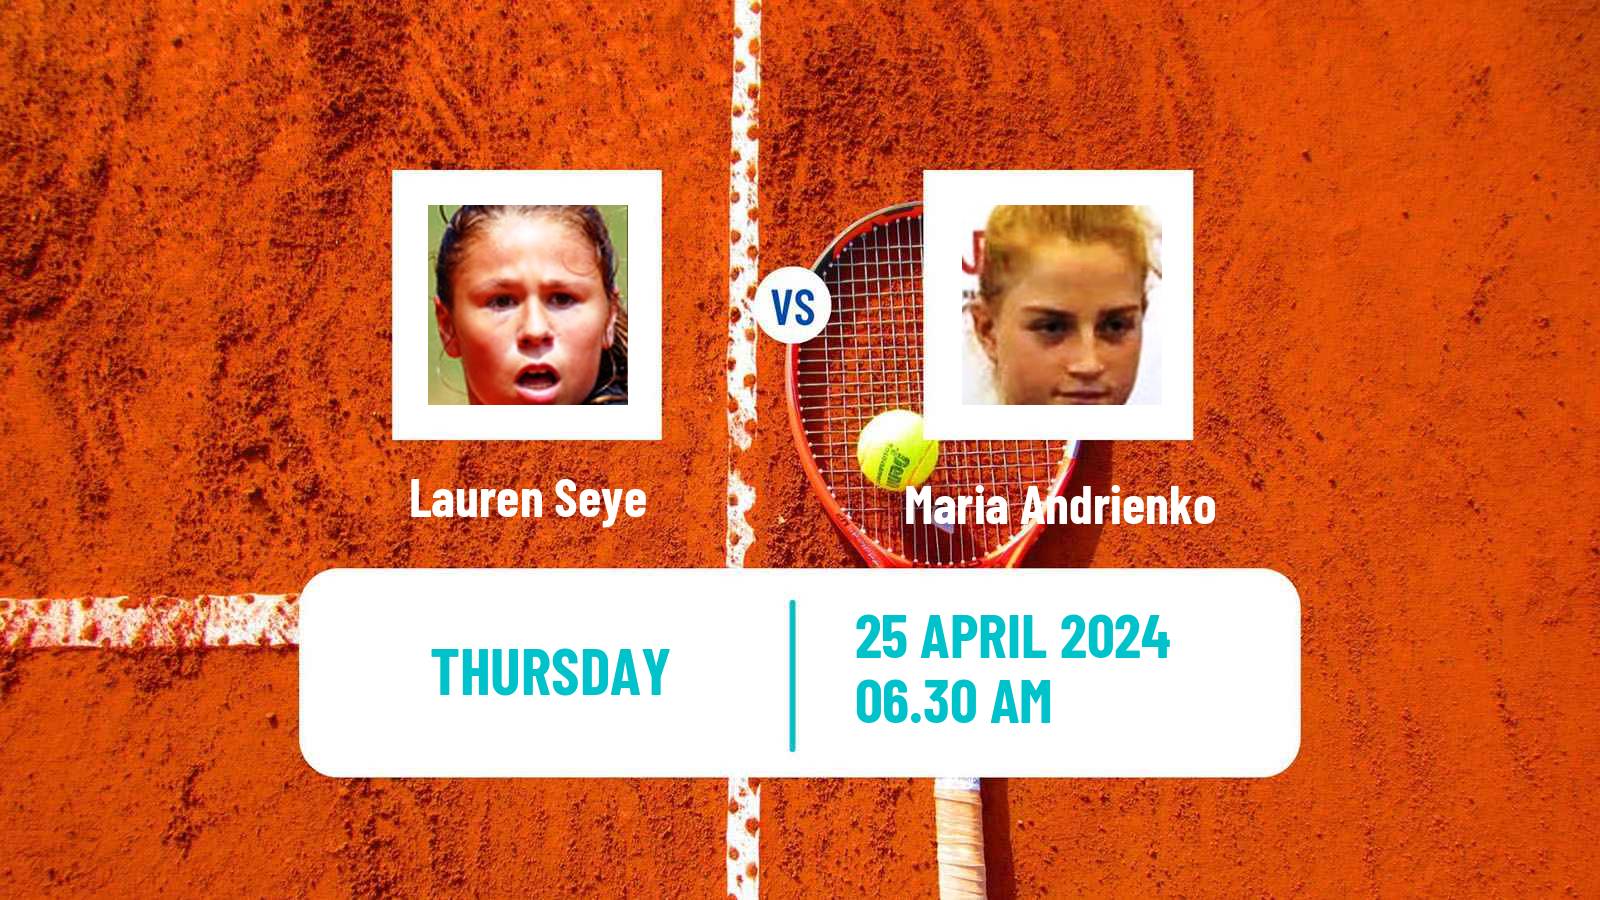 Tennis ITF W15 Telde 4 Women Lauren Seye - Maria Andrienko